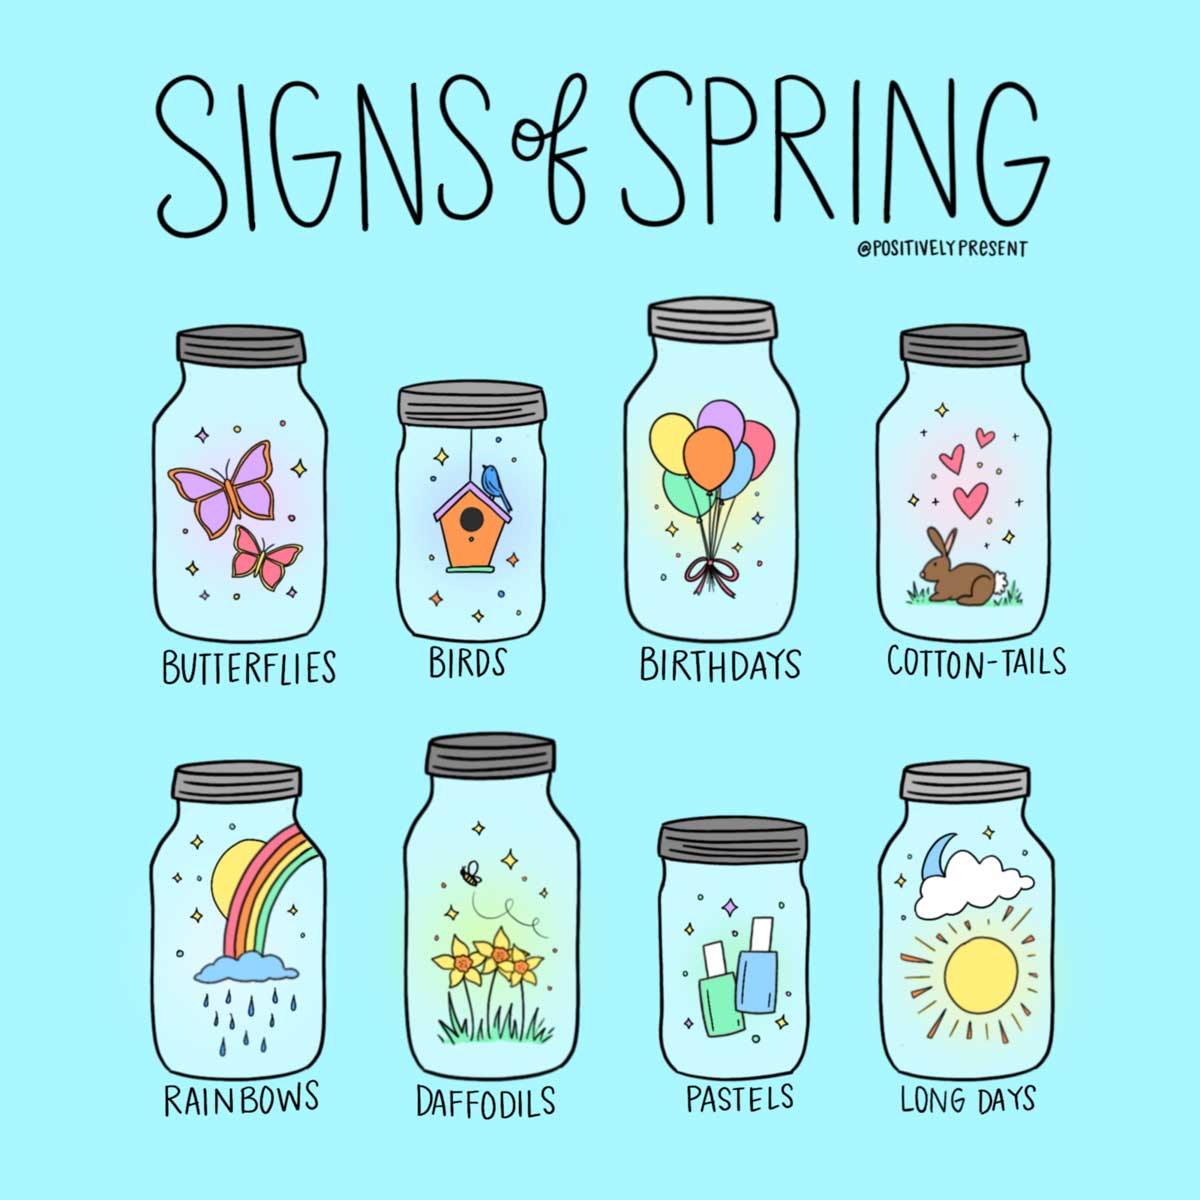 signs of spring drawings in jars.